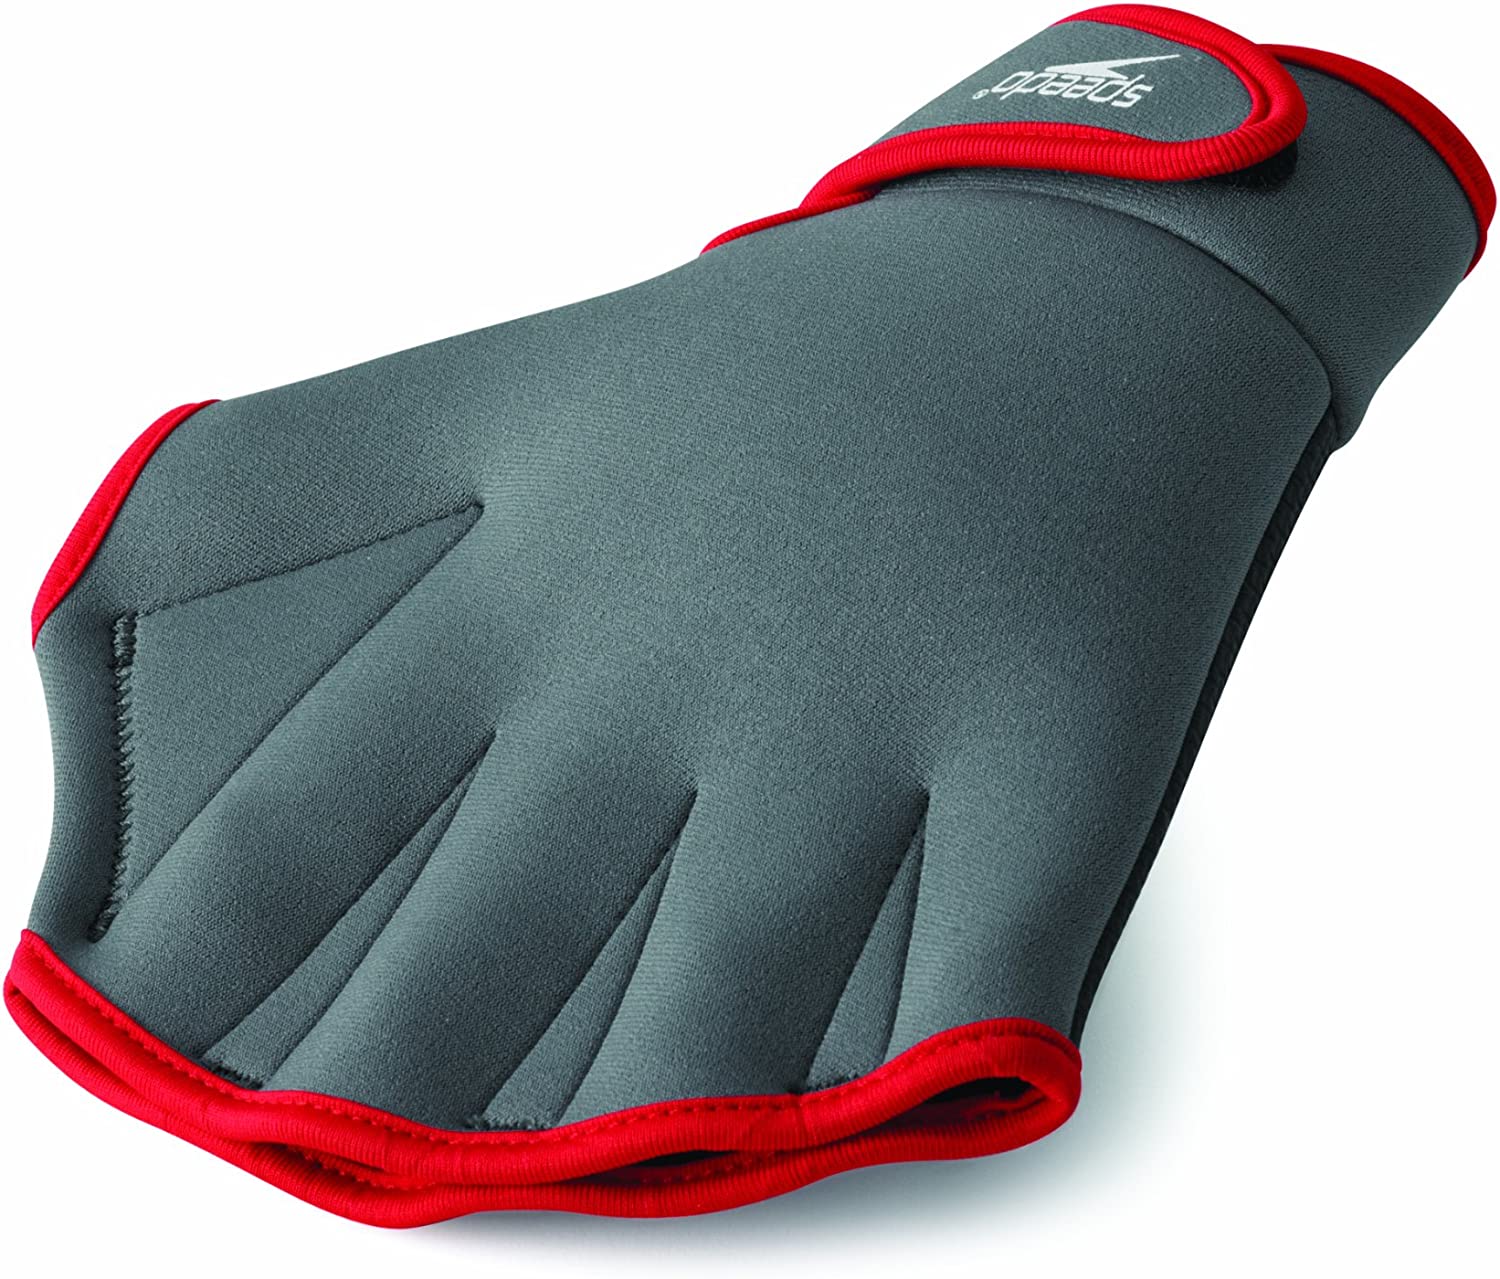  5. Speedo Aqua Fit Swim Training Gloves 